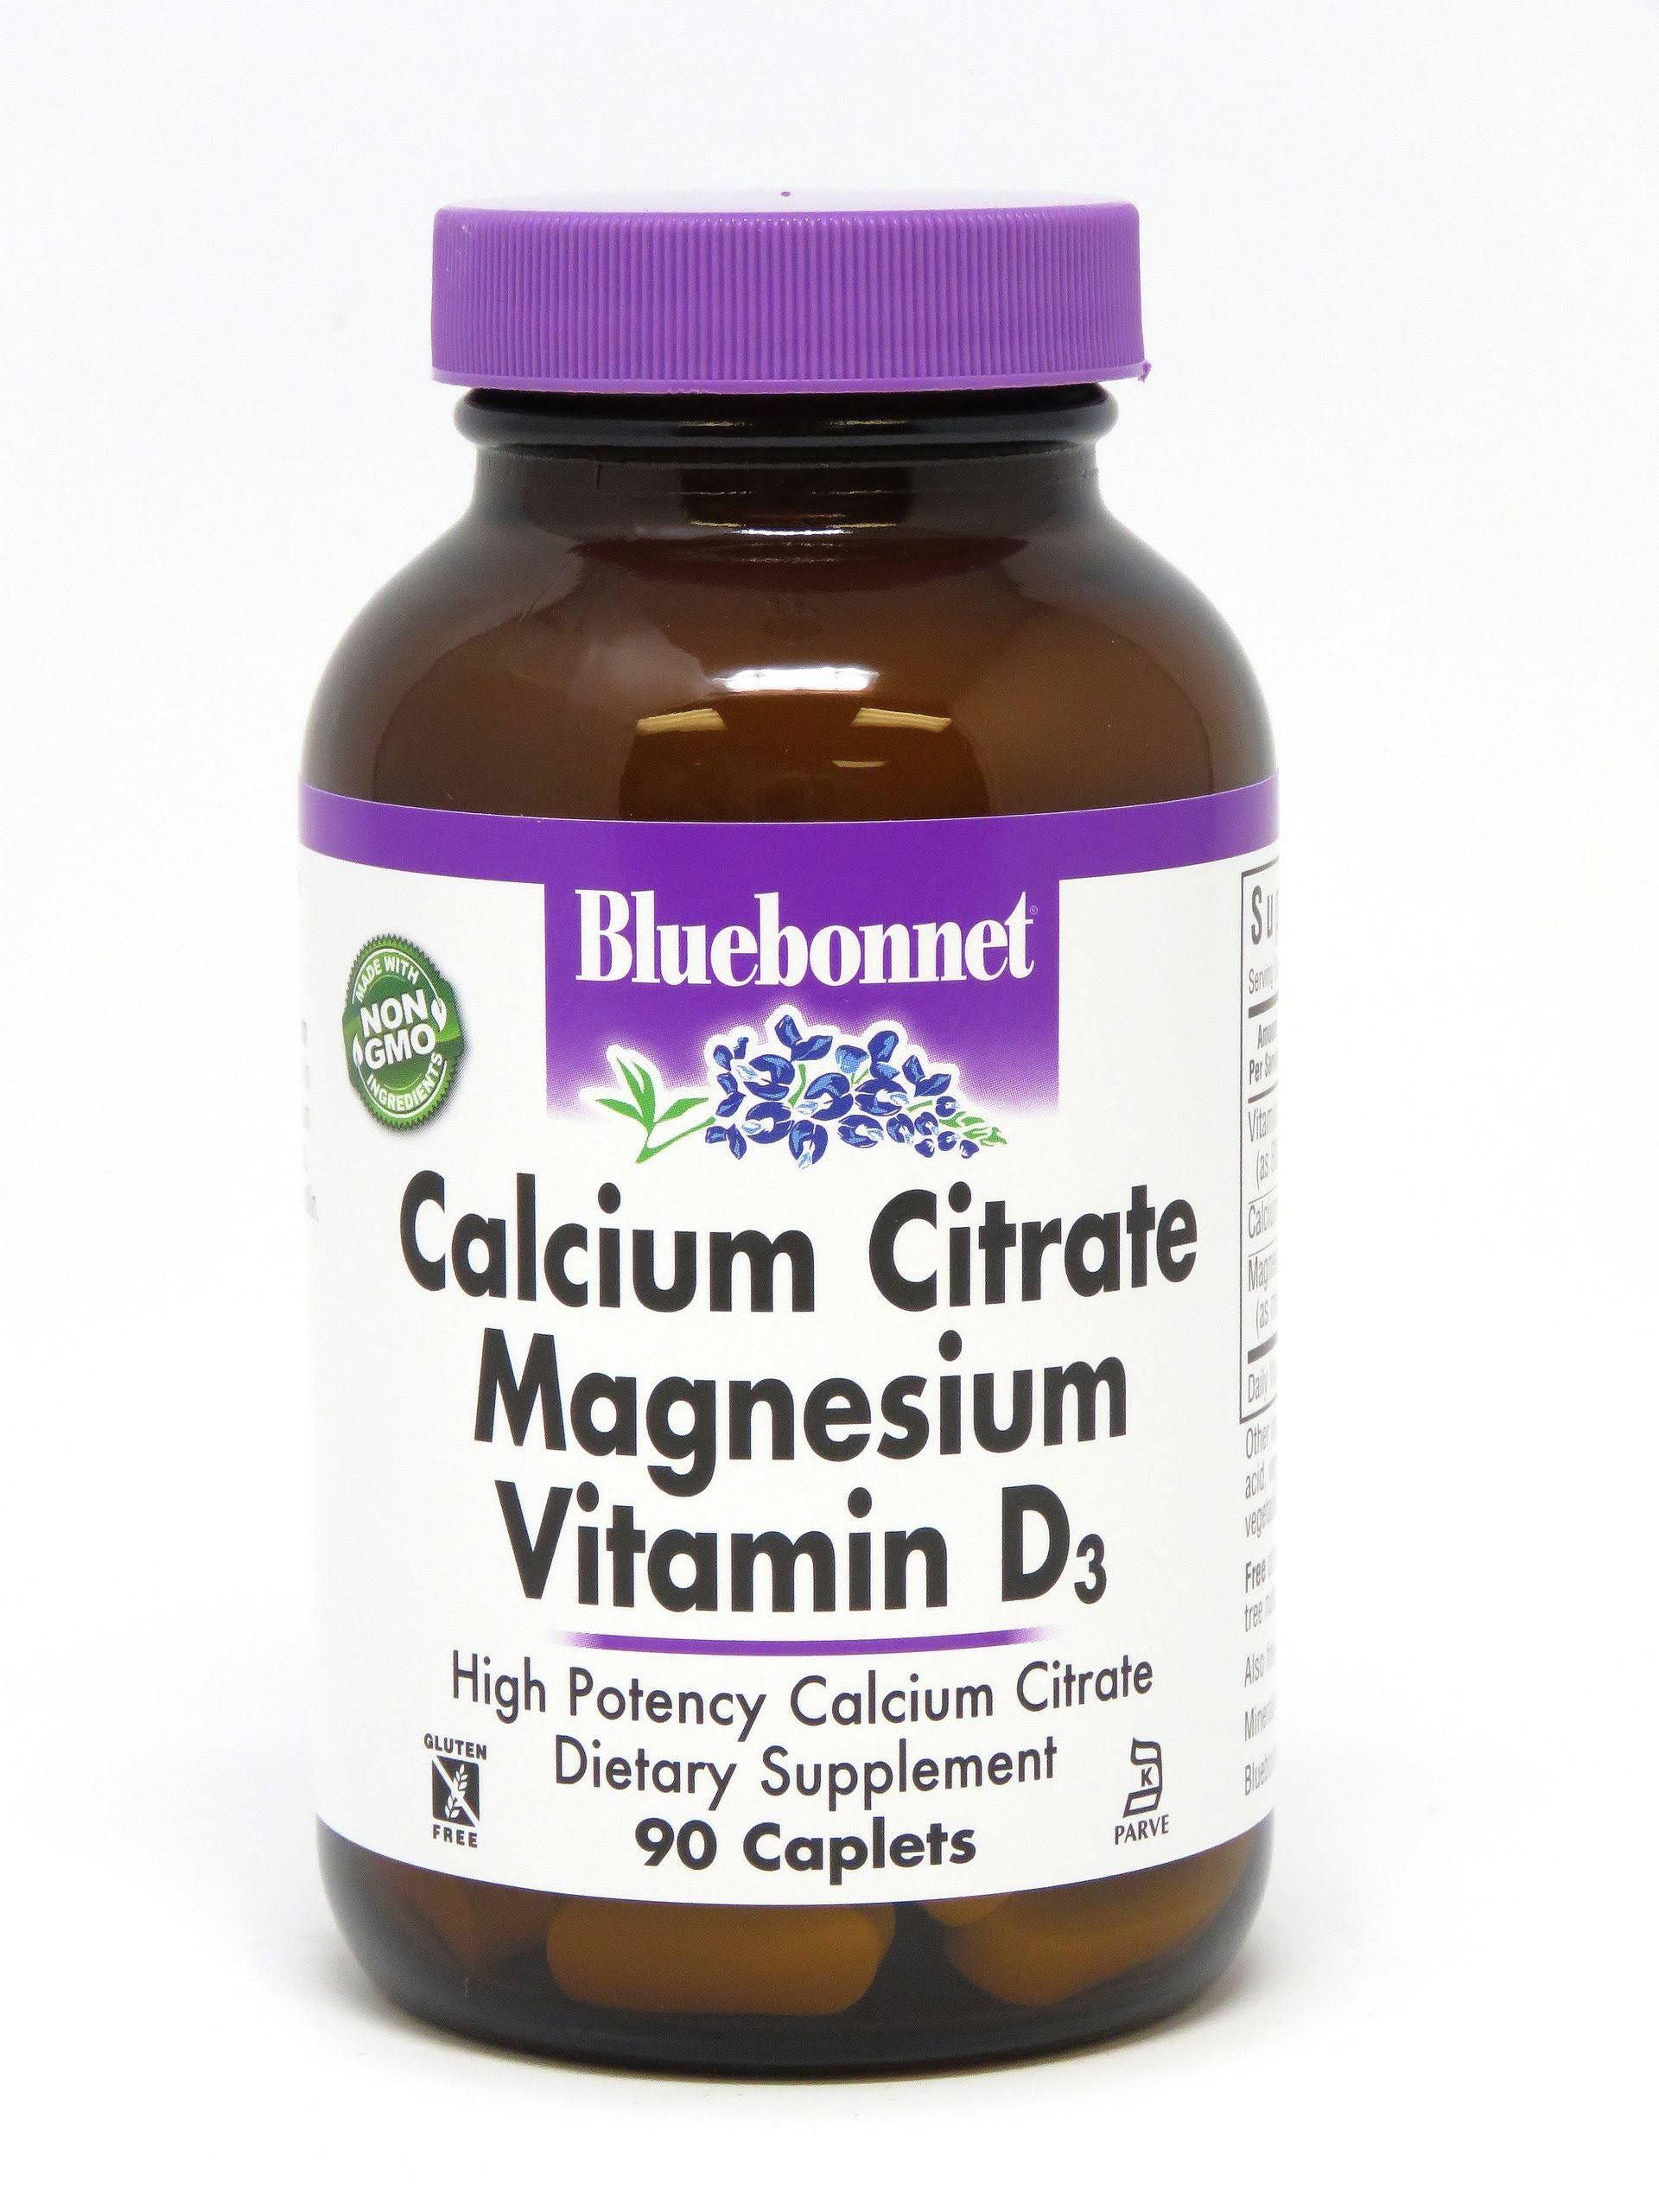 Bluebonnet Calcium Citrate Magnesium Vitamin D3 - 180 Caplets